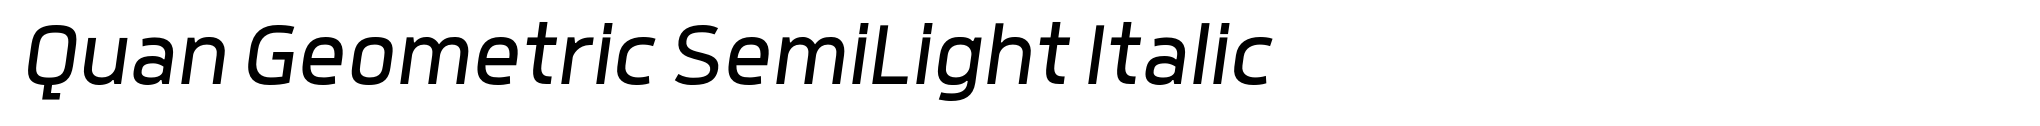 Quan Geometric SemiLight Italic image